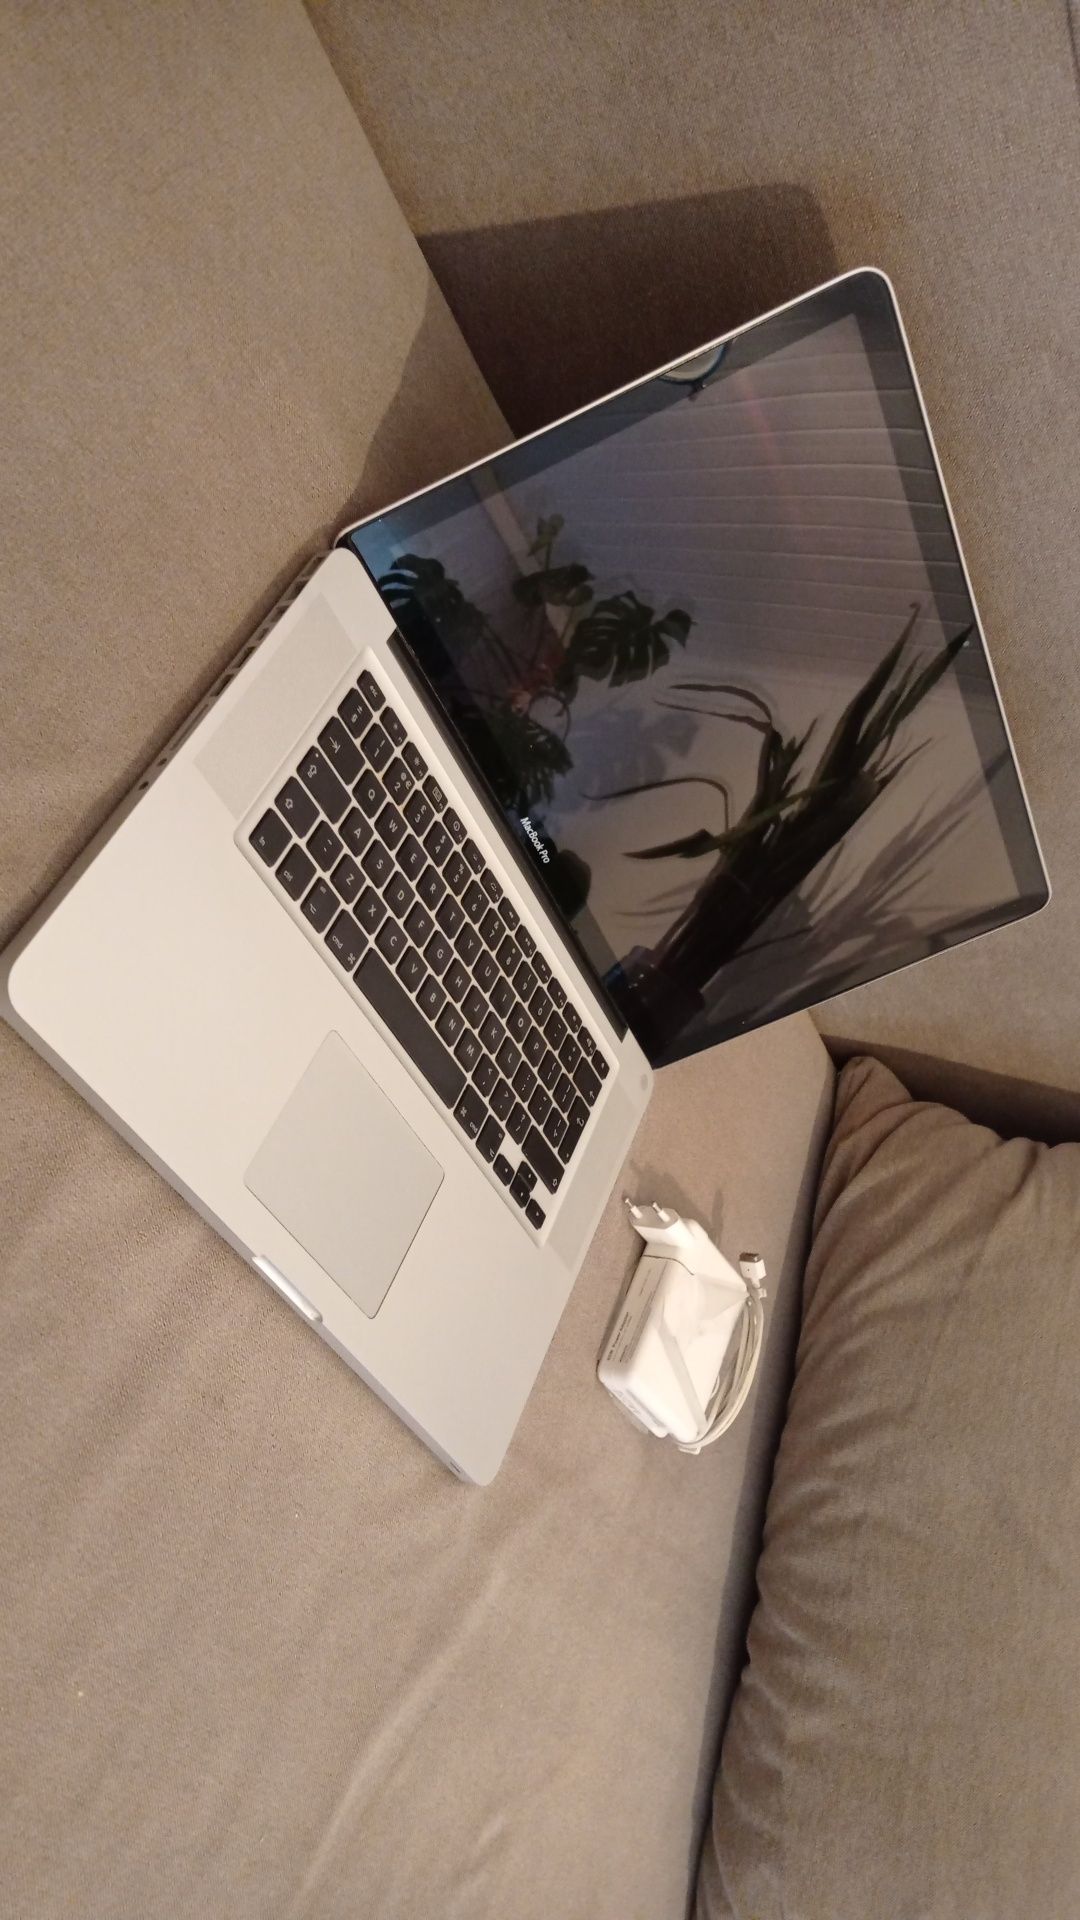 Sprawny, rewelacyjny Apple MacBook pro A1286